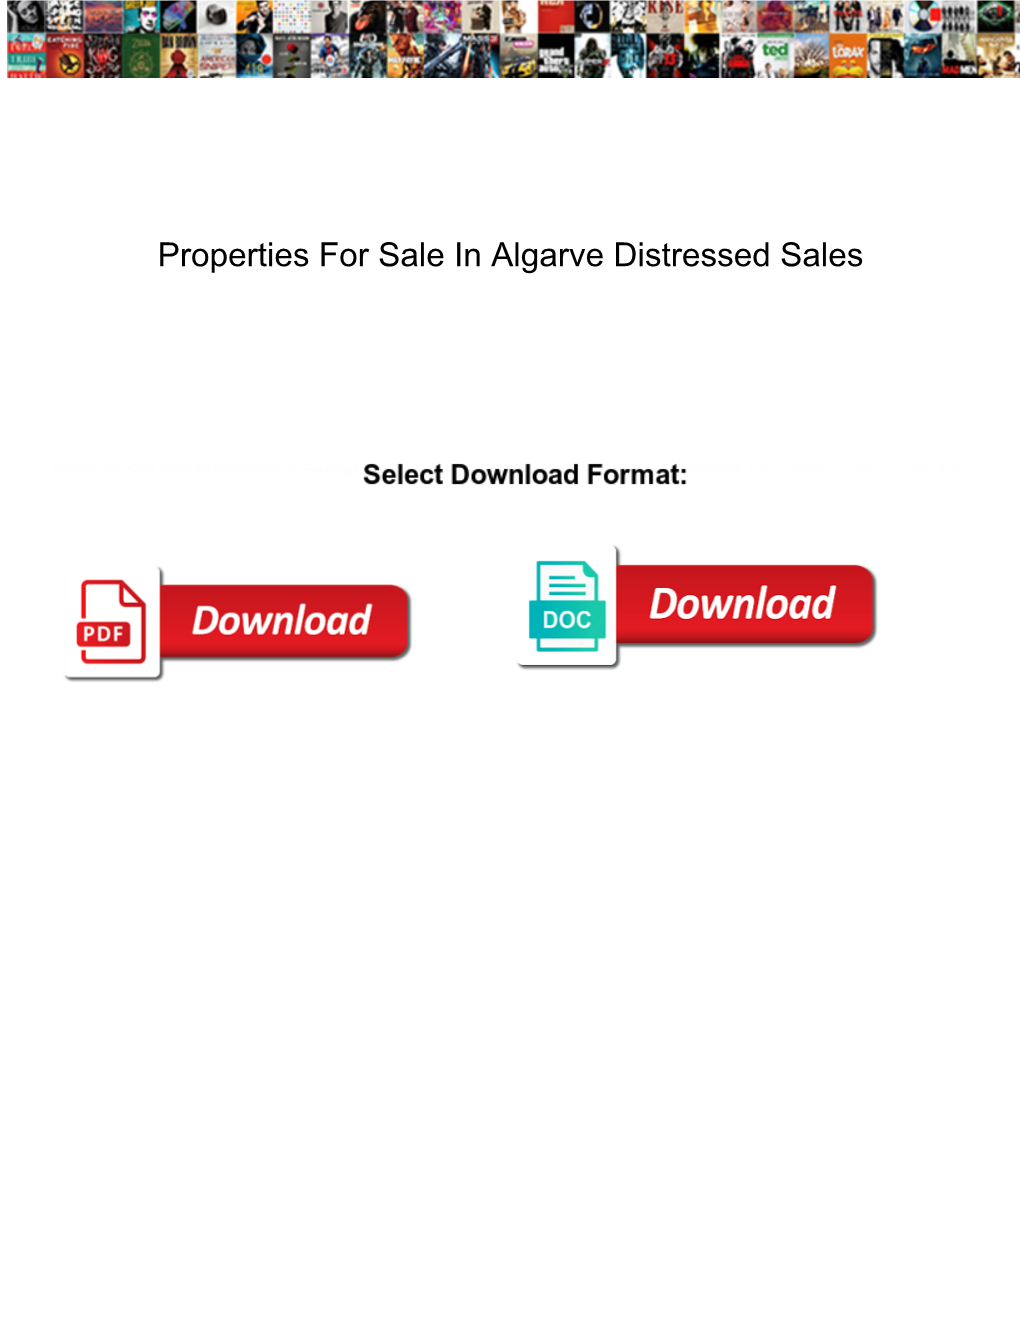 Properties for Sale in Algarve Distressed Sales